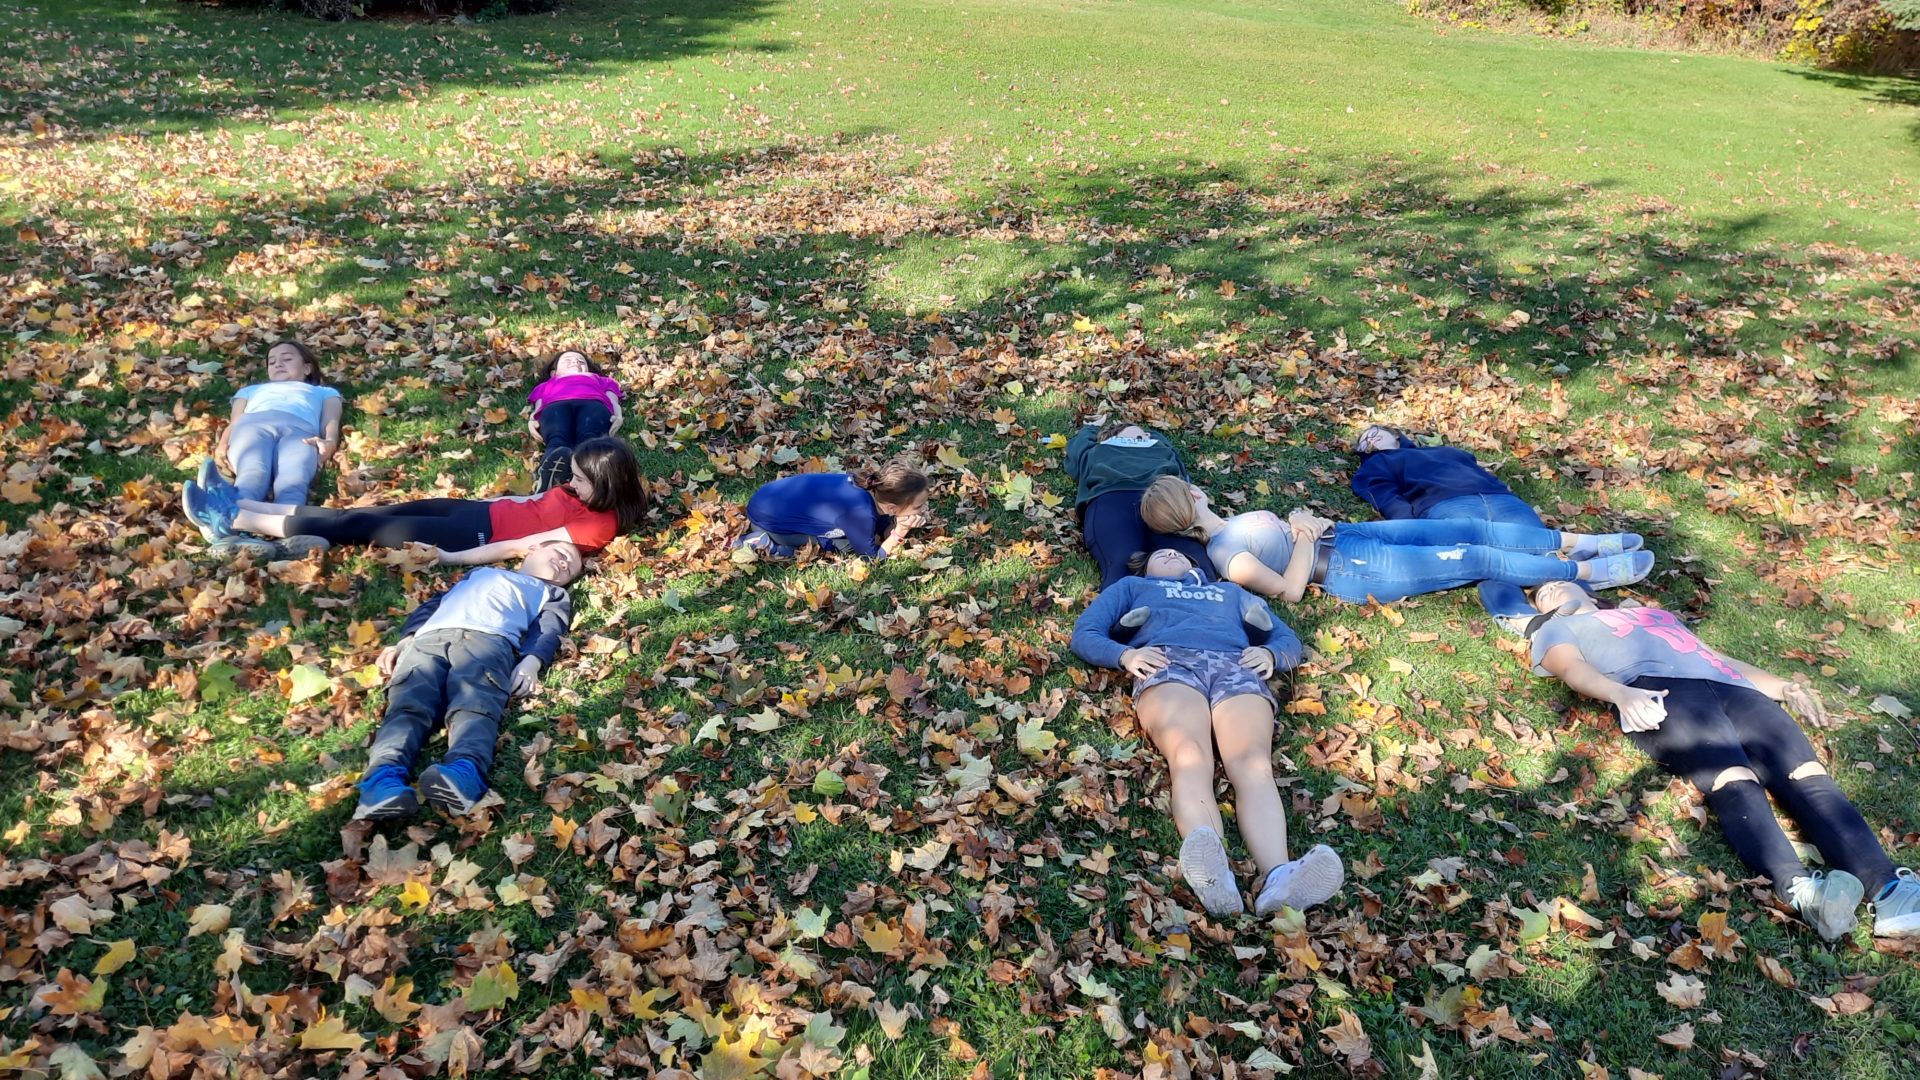 Members having fun in the leaves